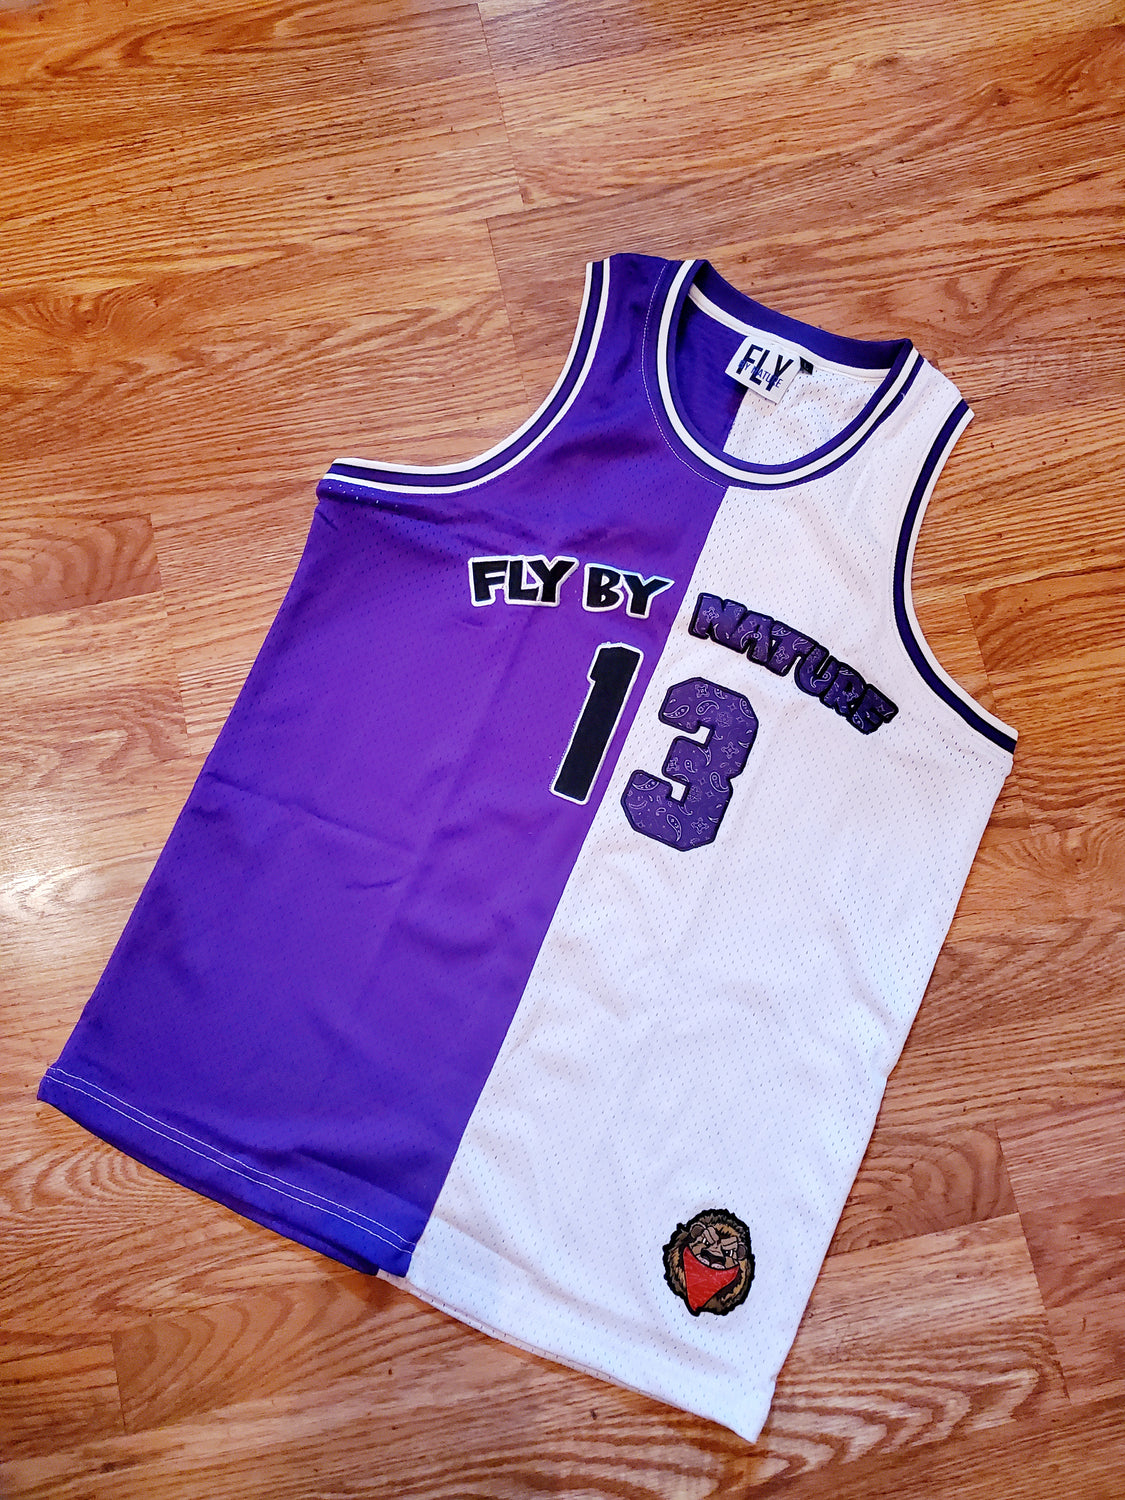 basketball jersey purple